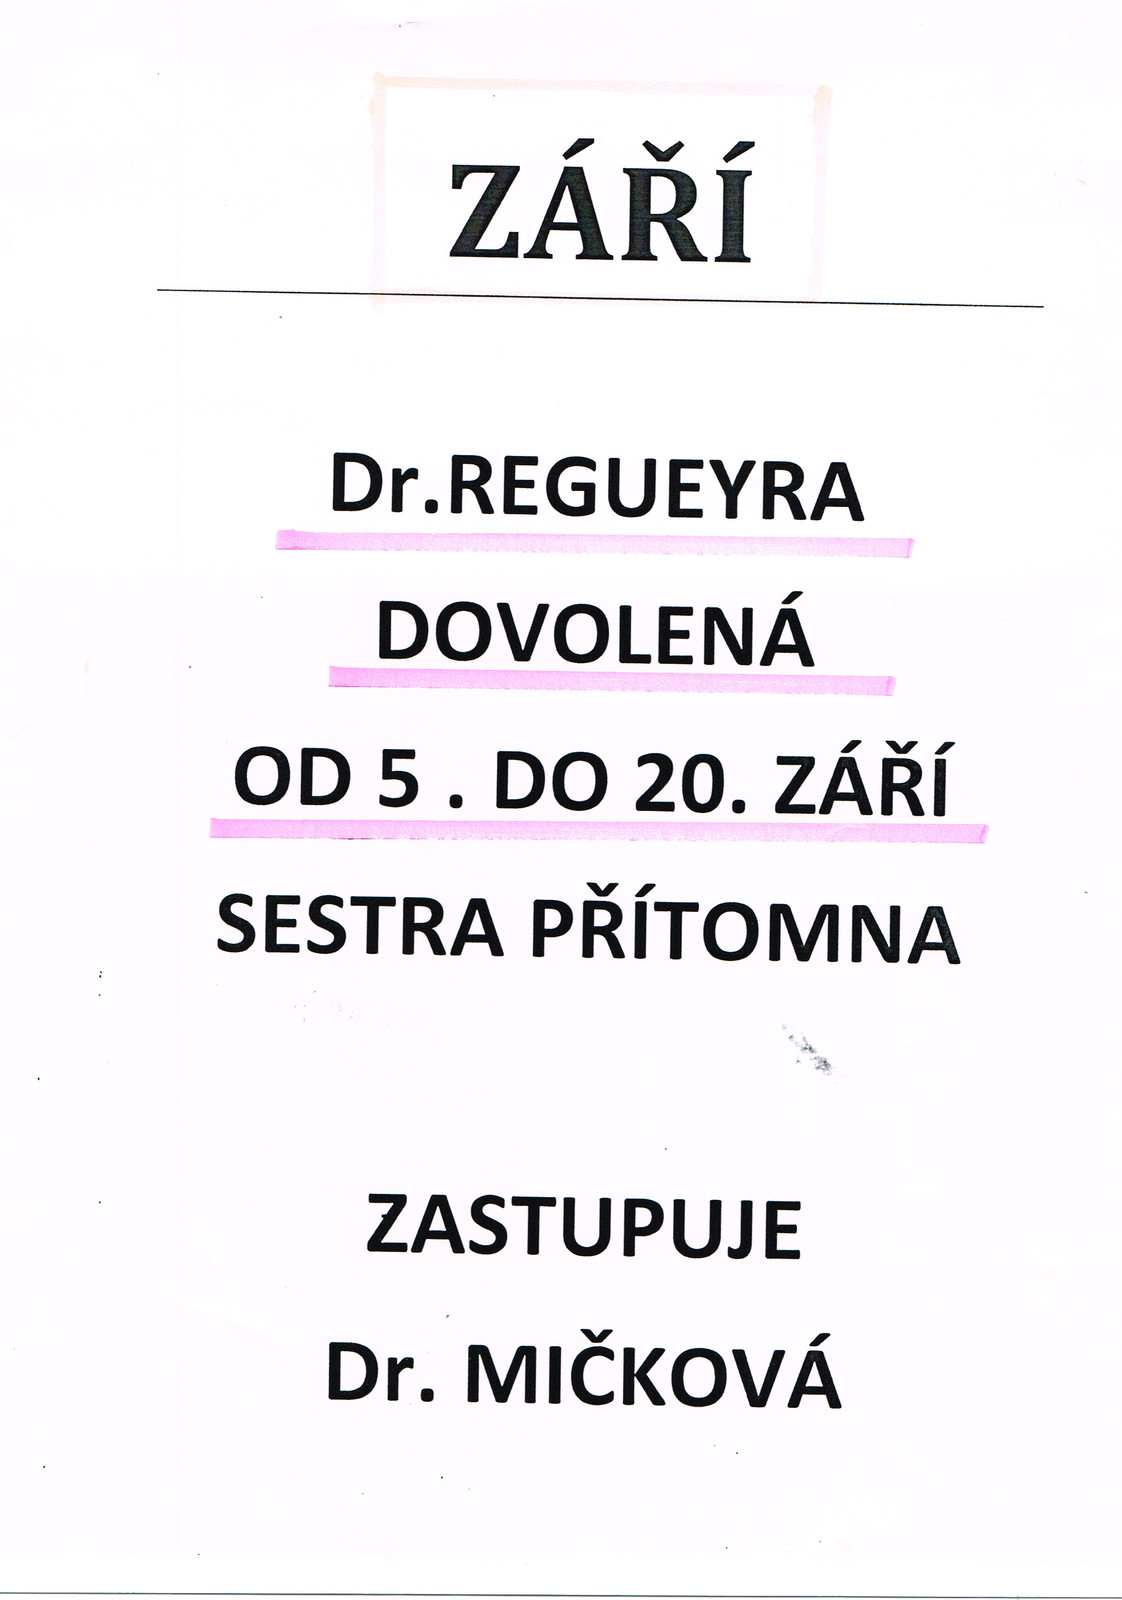 Dr. Regueyra.jpg